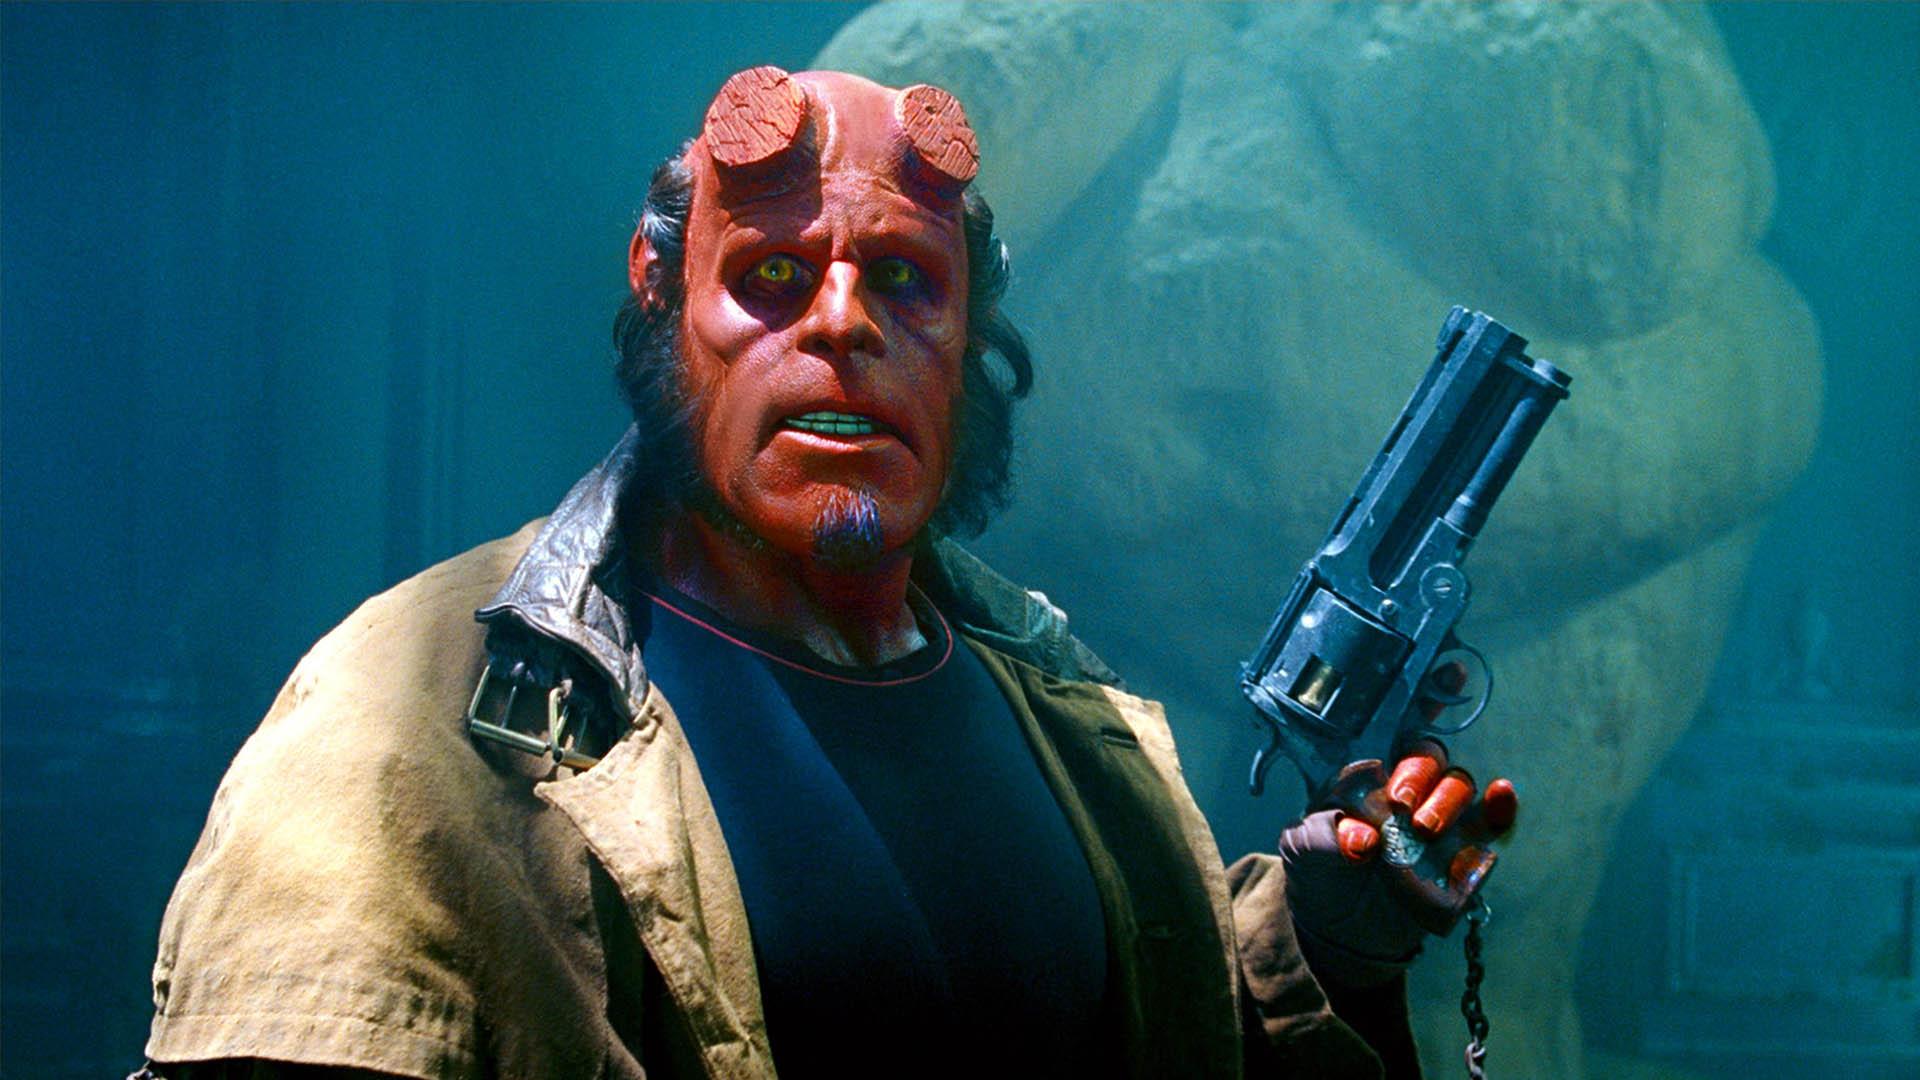 ران پرلمن در نقش پسر جهنمی در فیلم Hellboy